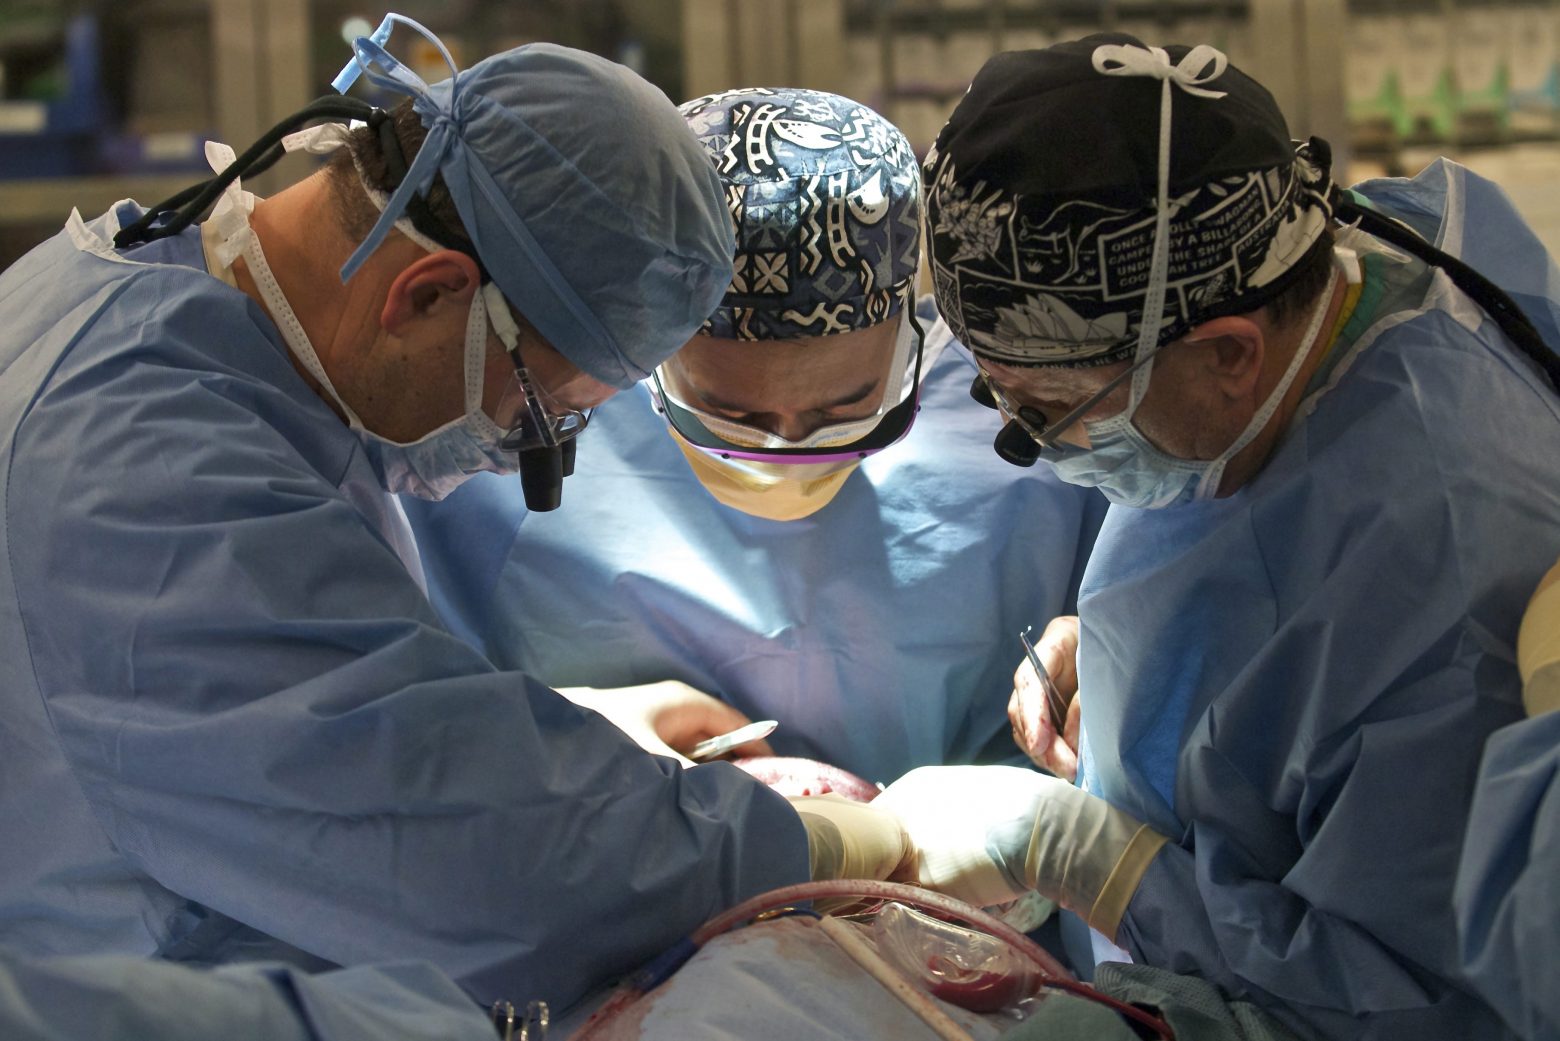 Ελπίδα για εκατομμύρια ασθενείς - Νεφροί χοίρου μεταμοσχεύτηκαν για πρώτη φορά σε άνθρωπο